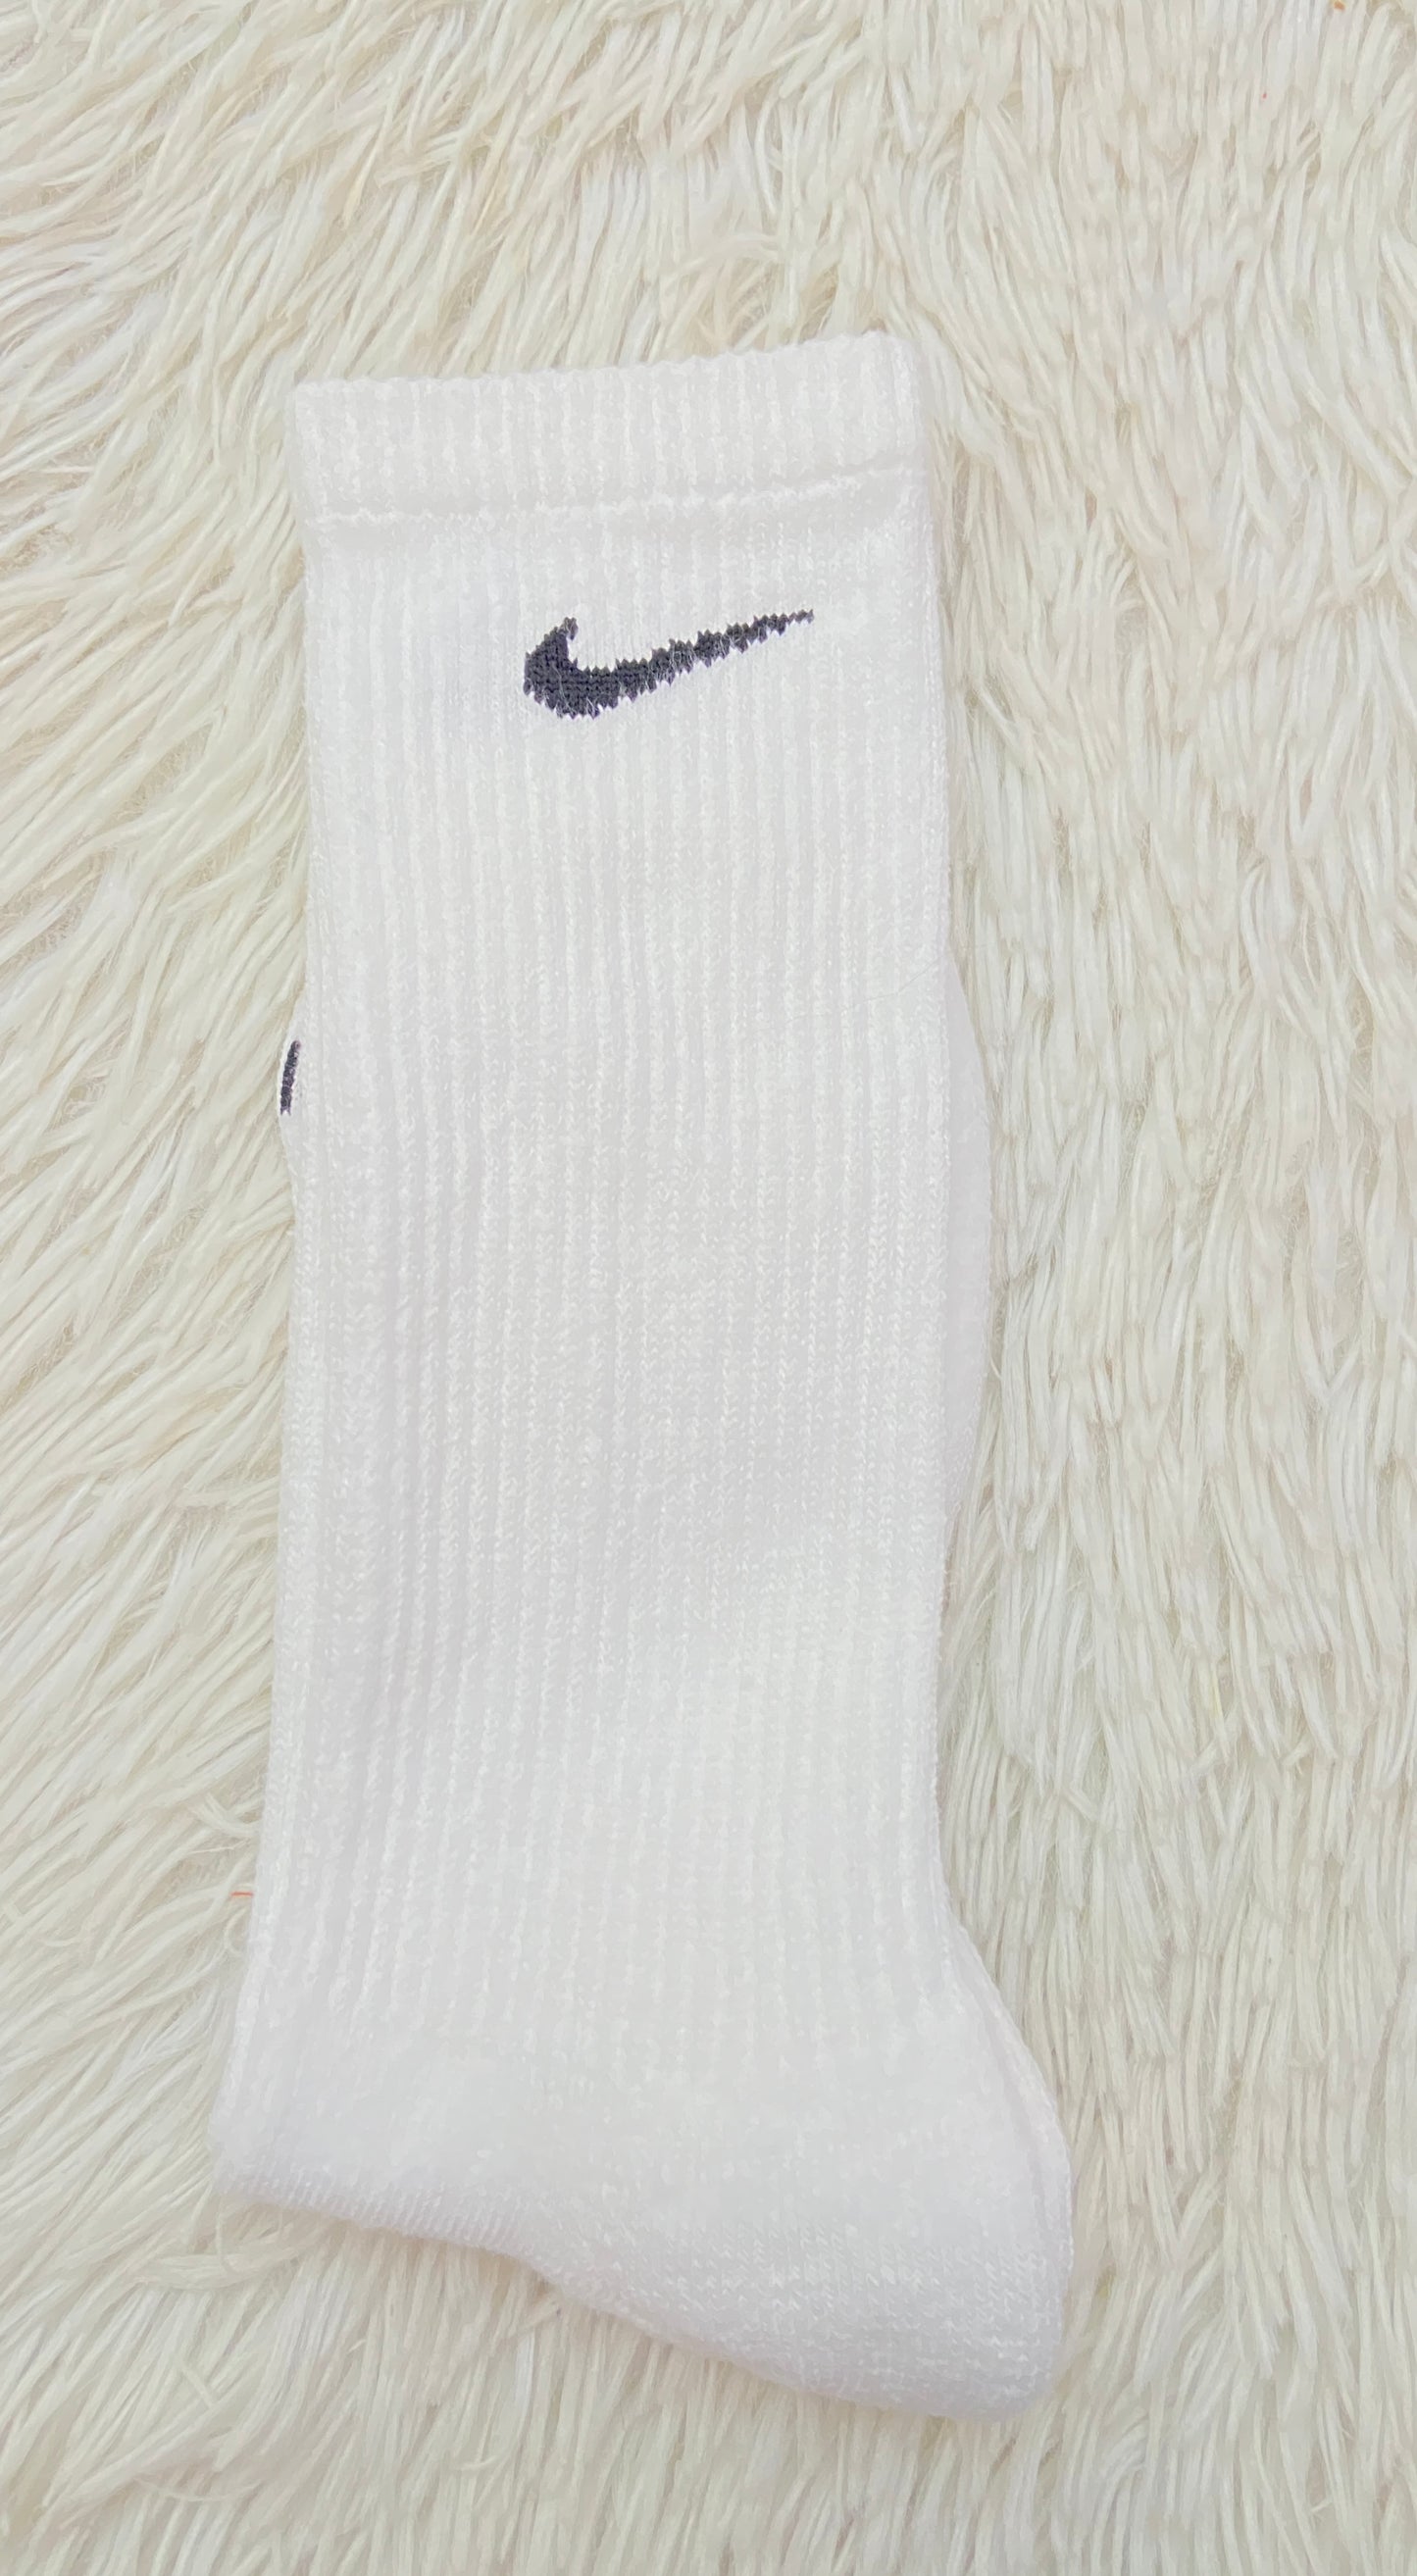 Medias Nike original blanca con logotipo de la marca en negro, altas.